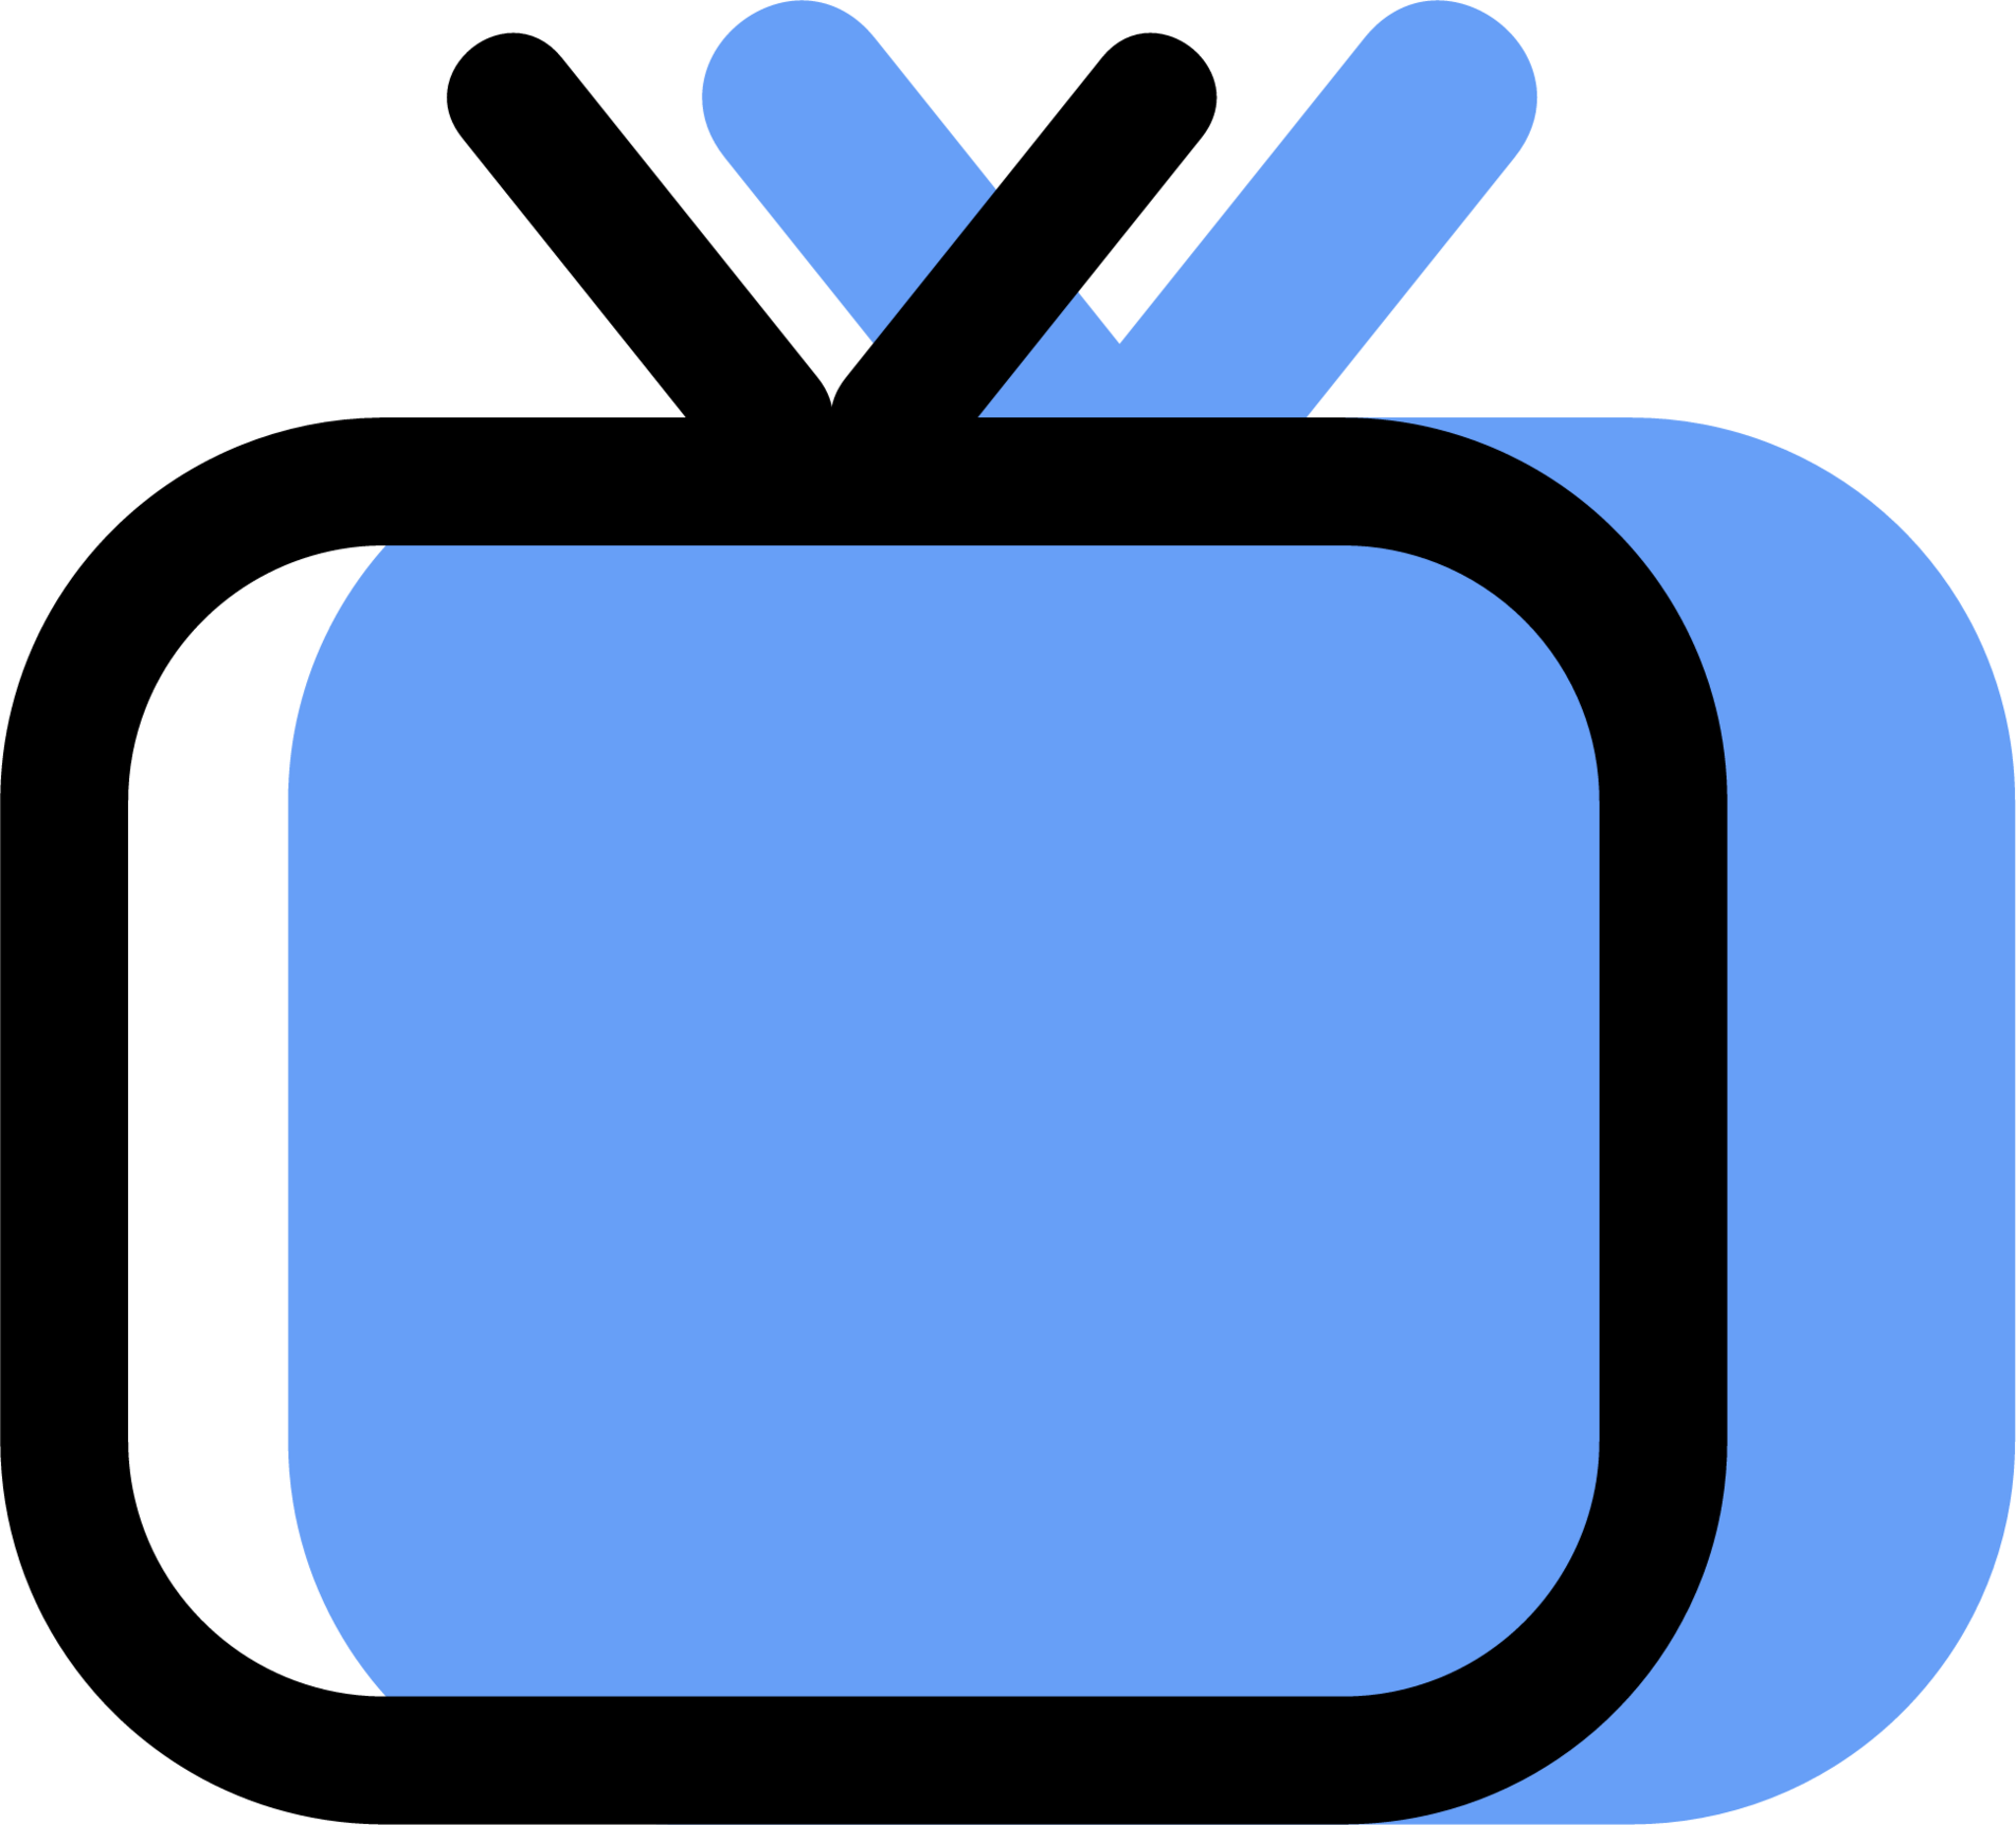 television icon